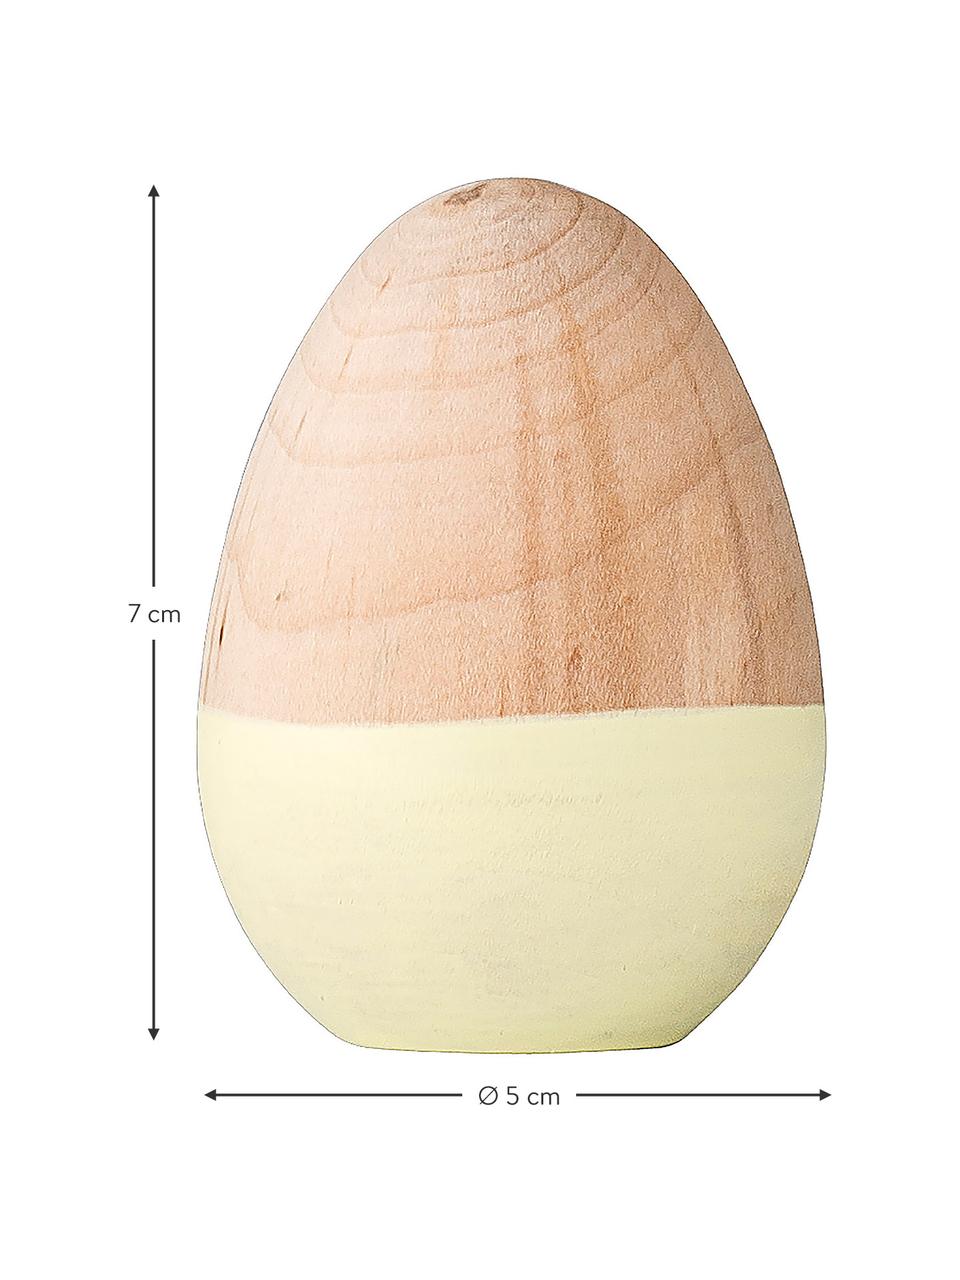 Deko-Objekt Egg, Holz, beschichtet, Gelb, Holz, Ø 5 x H 7 cm